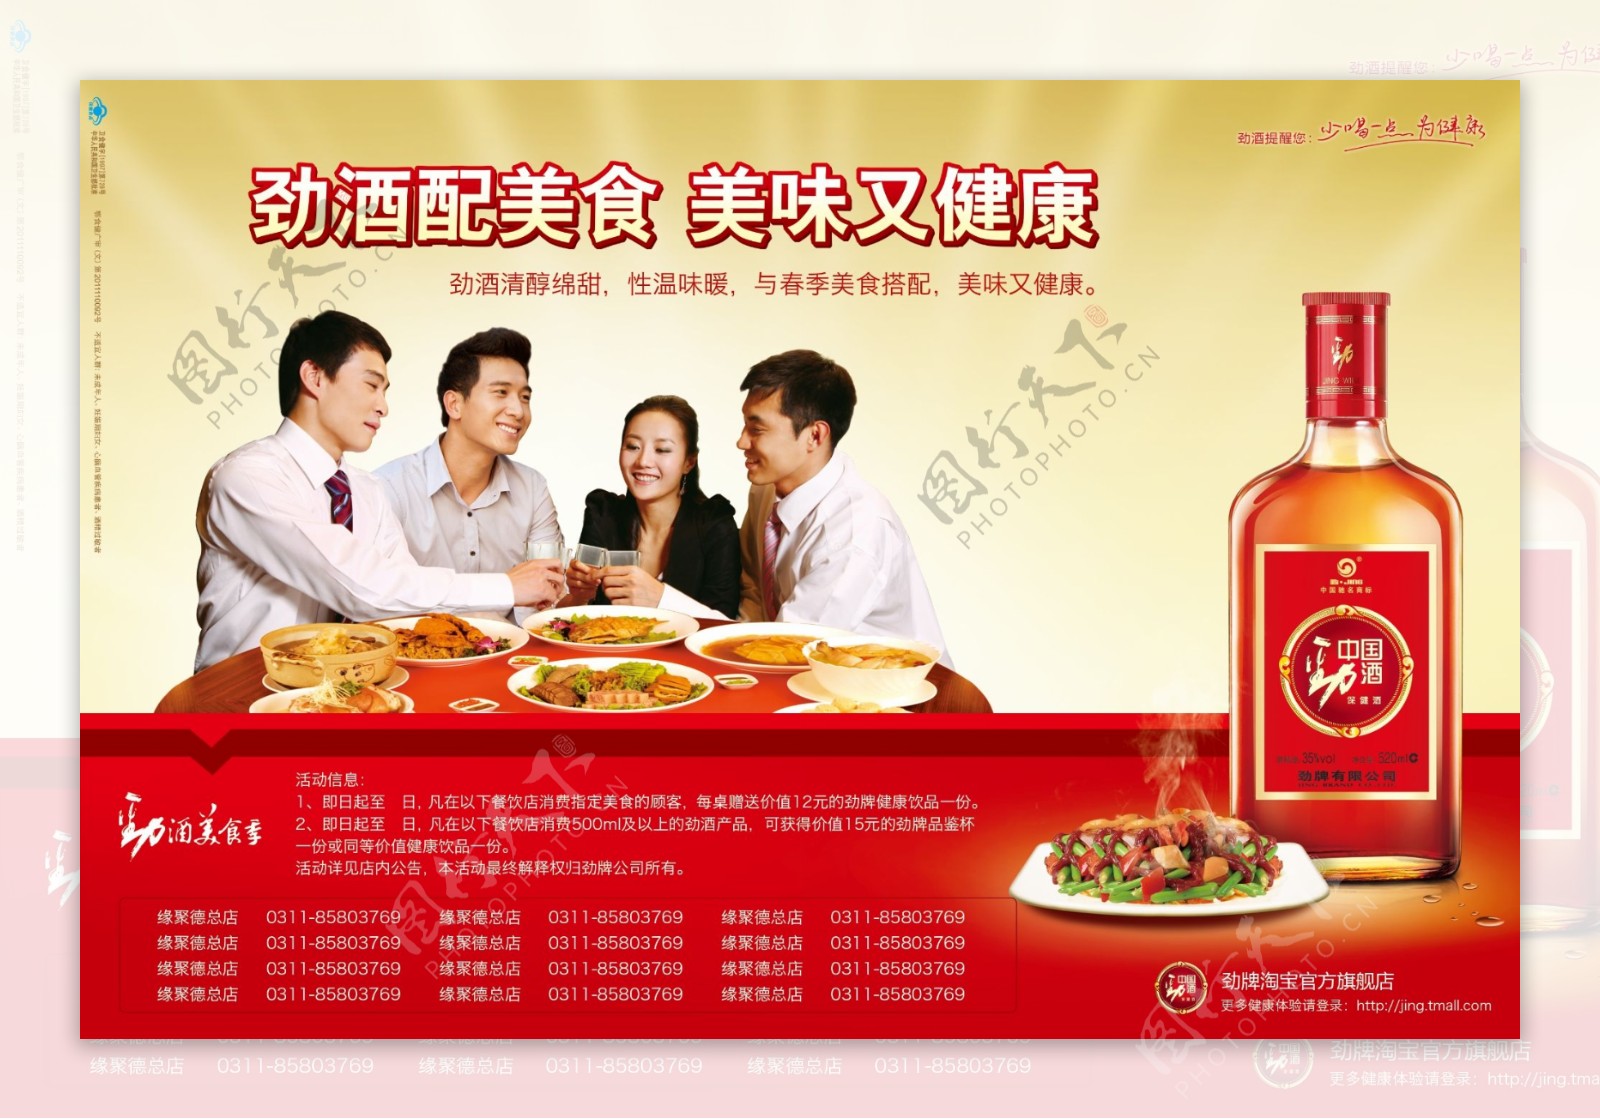 中国劲酒海报广告PSD素材